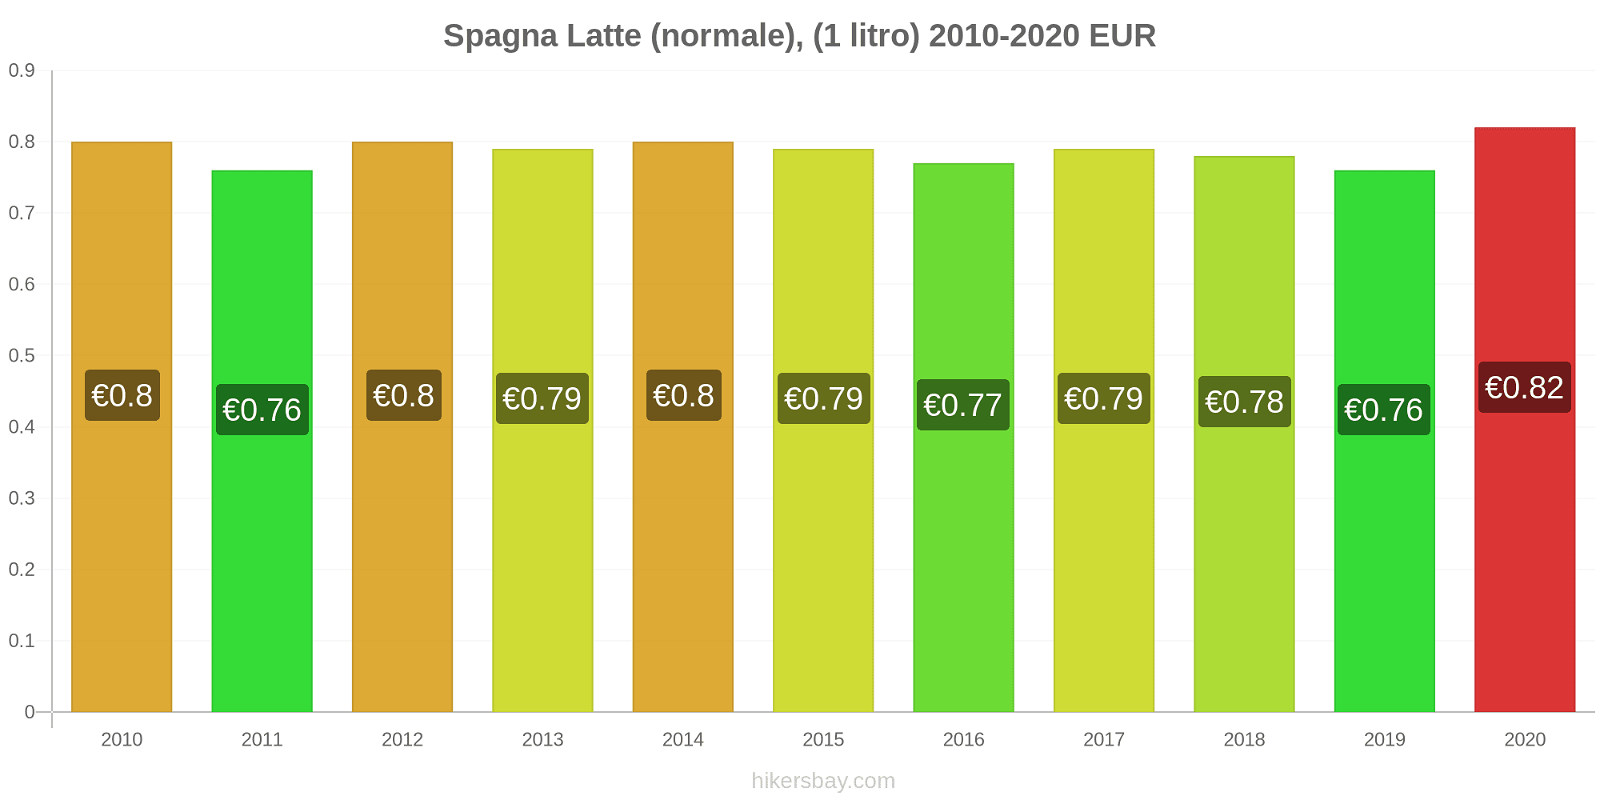 Spagna variazioni di prezzo Latte (1 litro) hikersbay.com